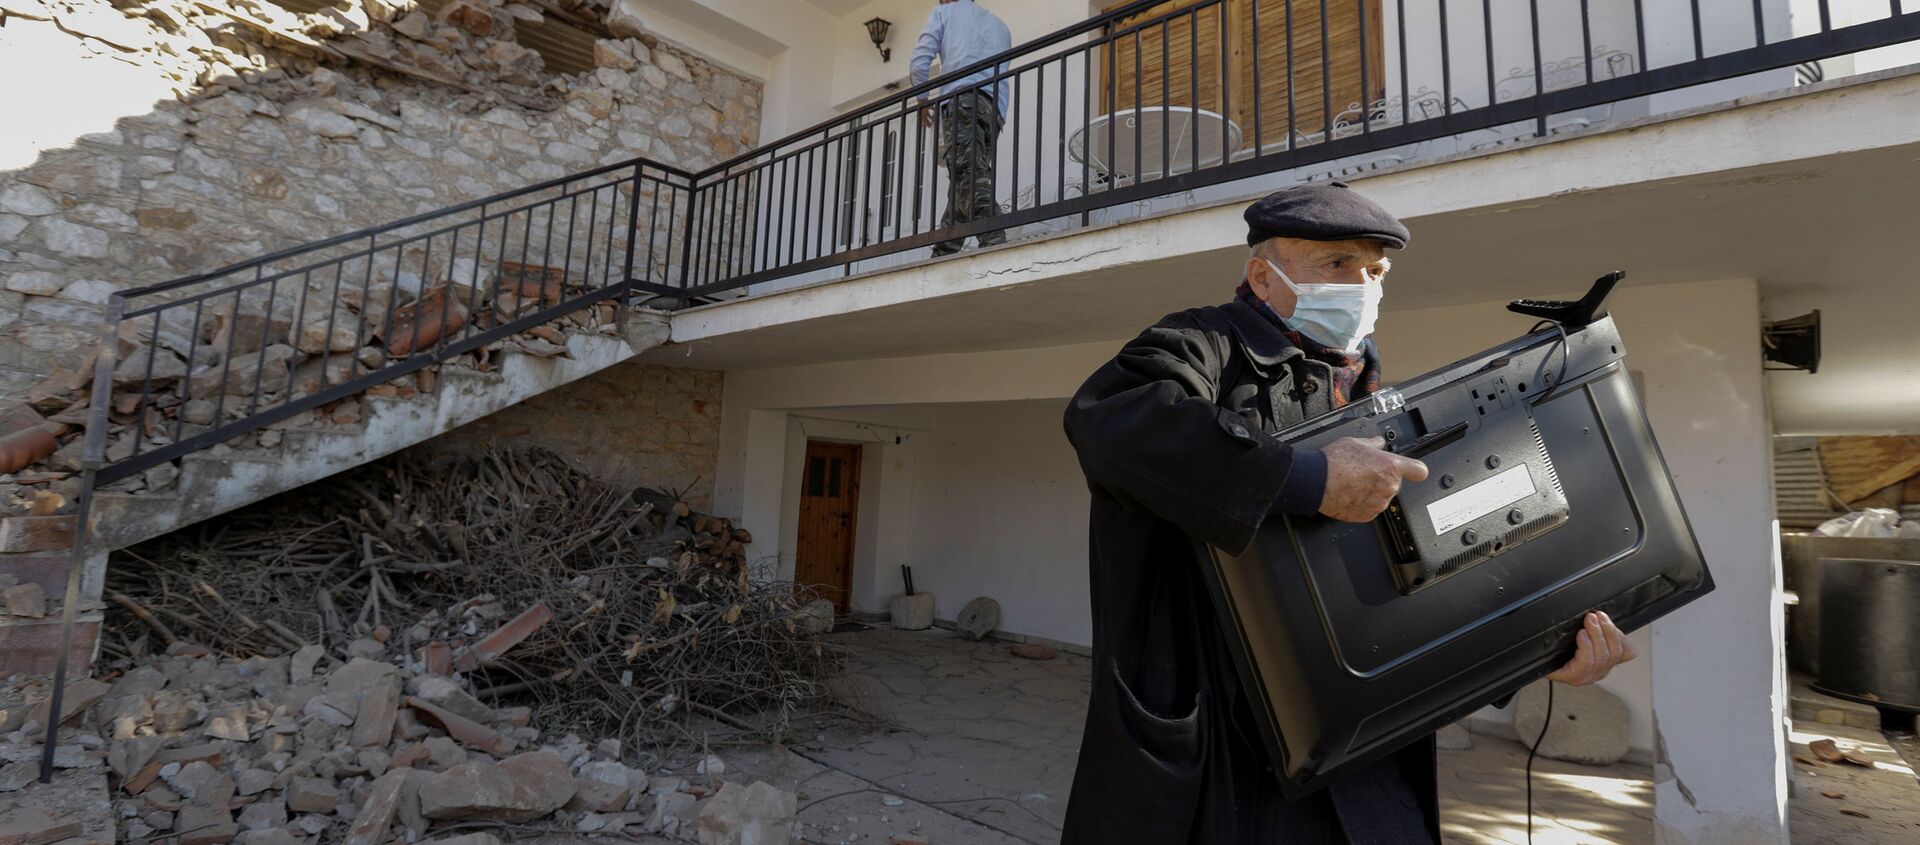 Мужчина с телевизором у поврежденного дома вследствие землетрясения в Греции  - Sputnik Узбекистан, 1920, 04.03.2021